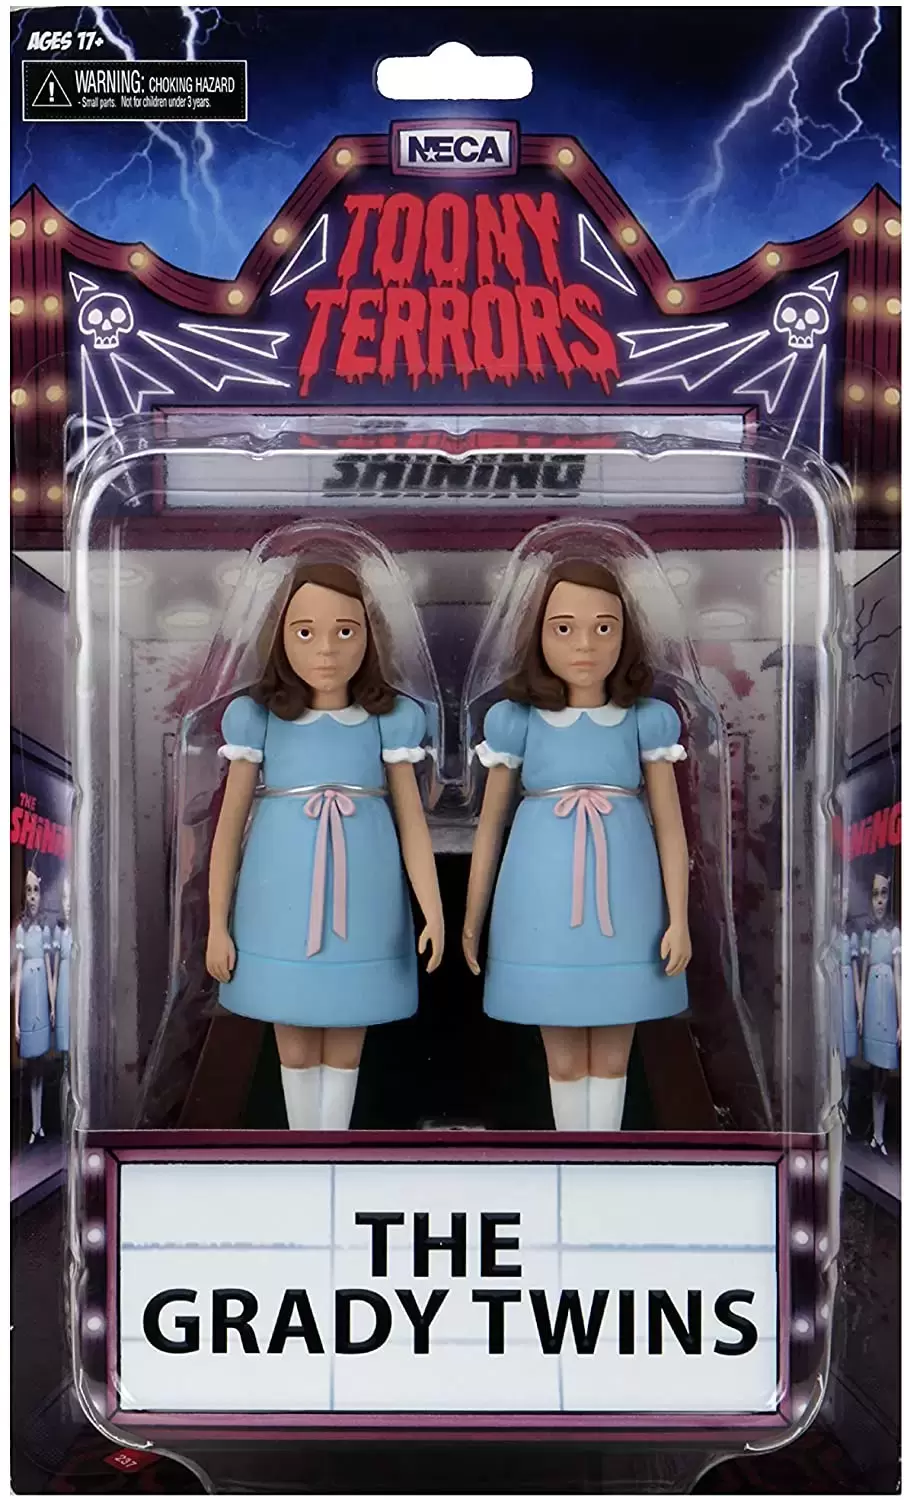 NECA - The Shining - The Grady Twins Toony Terrors